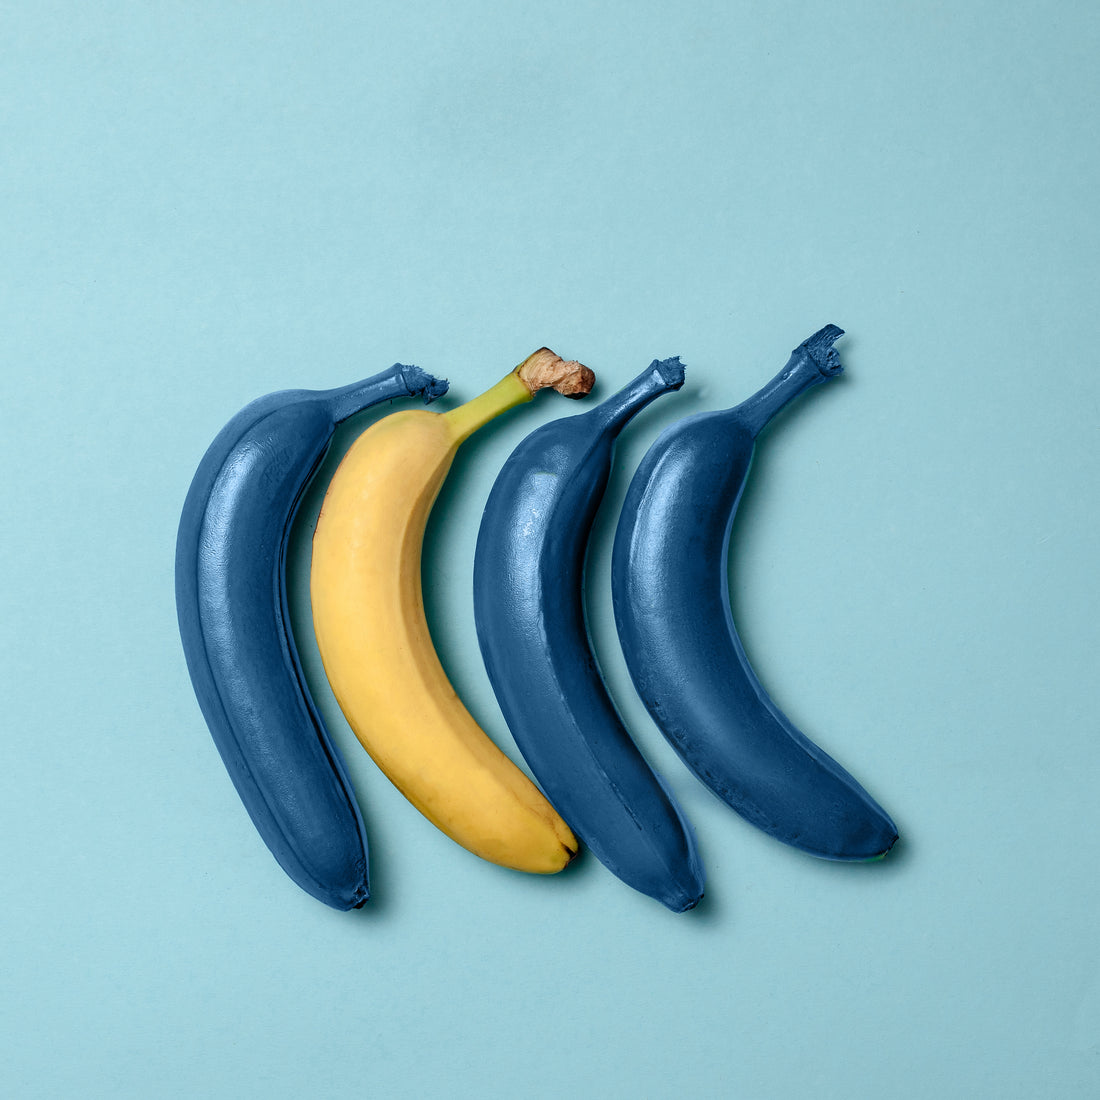 Bananas showing creativitiy